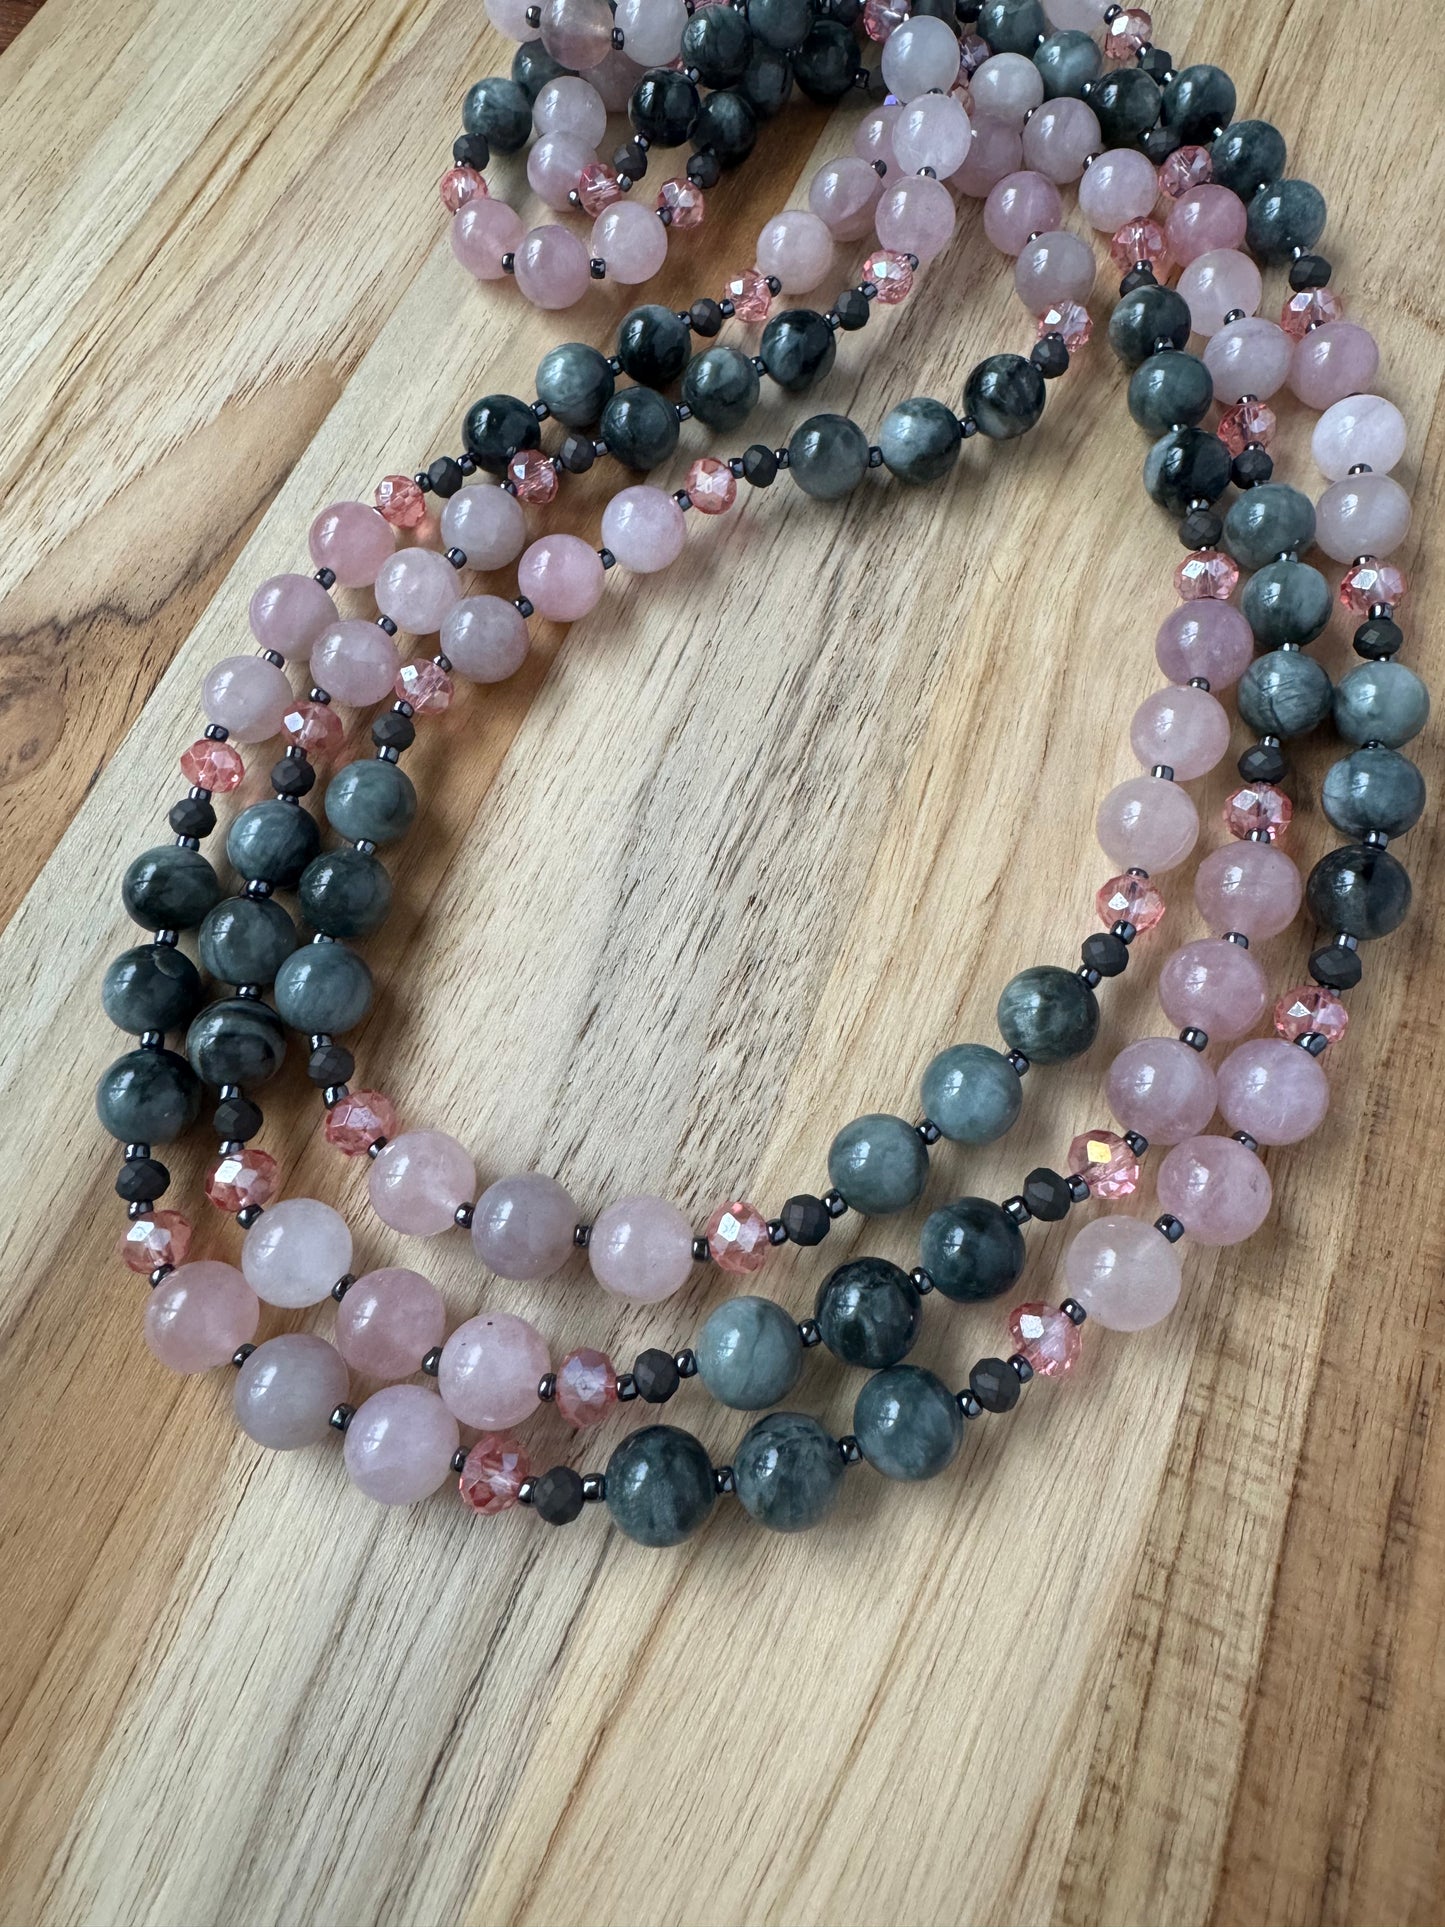 Extra long Wraparound Beaded Necklace with Eagle Eye Stone Madagascar Rose Quartz and Crystal Beads